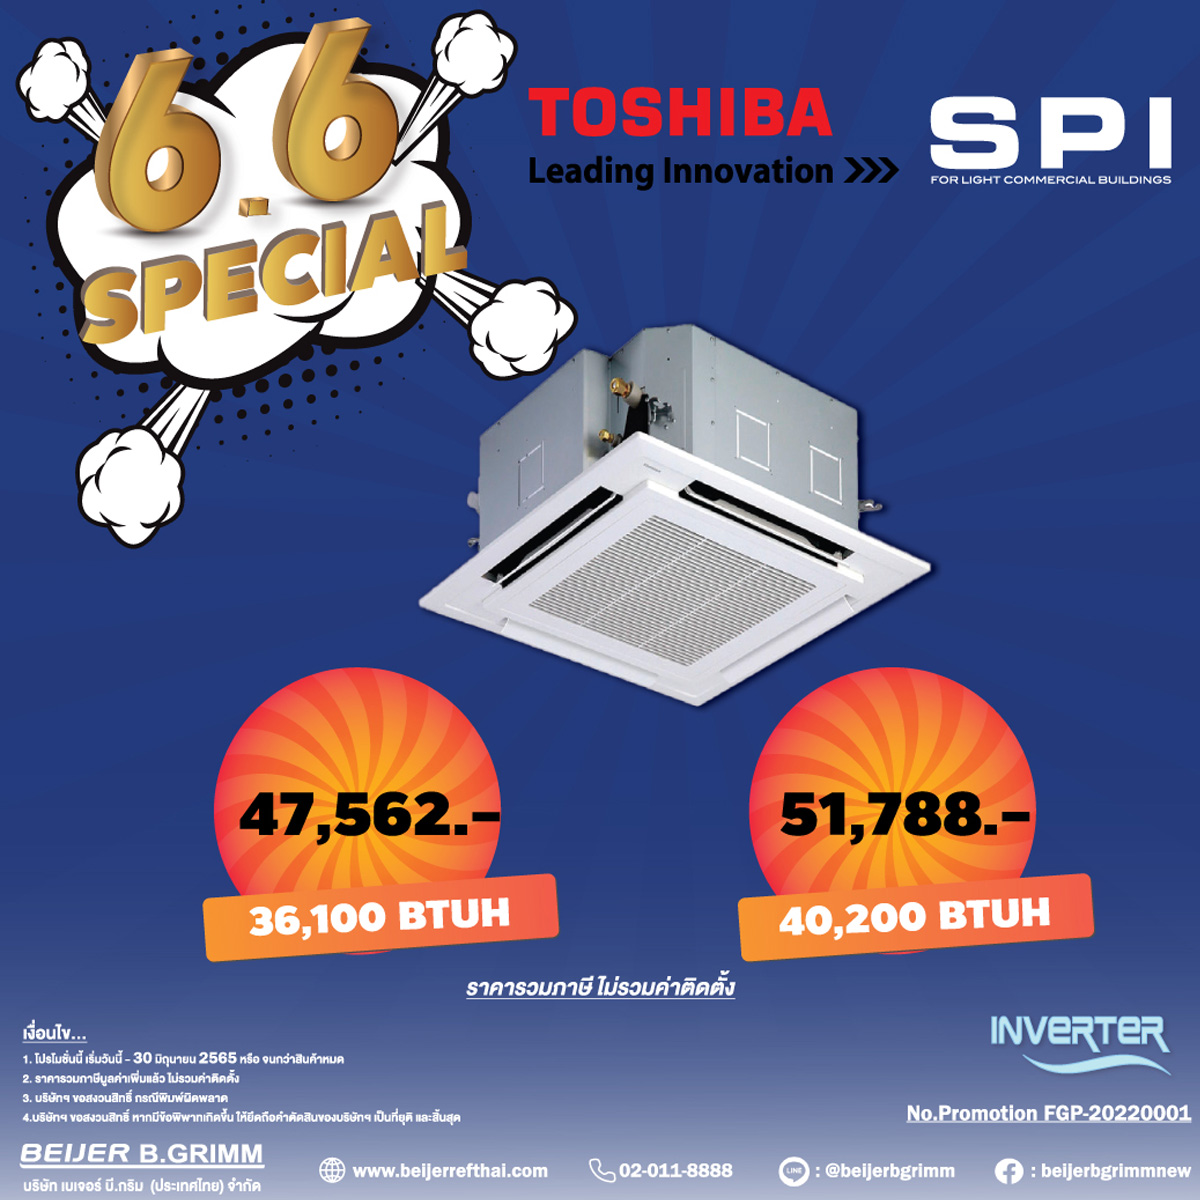 มิถุนา 65 TOSHIBA SPI 6.6 Special